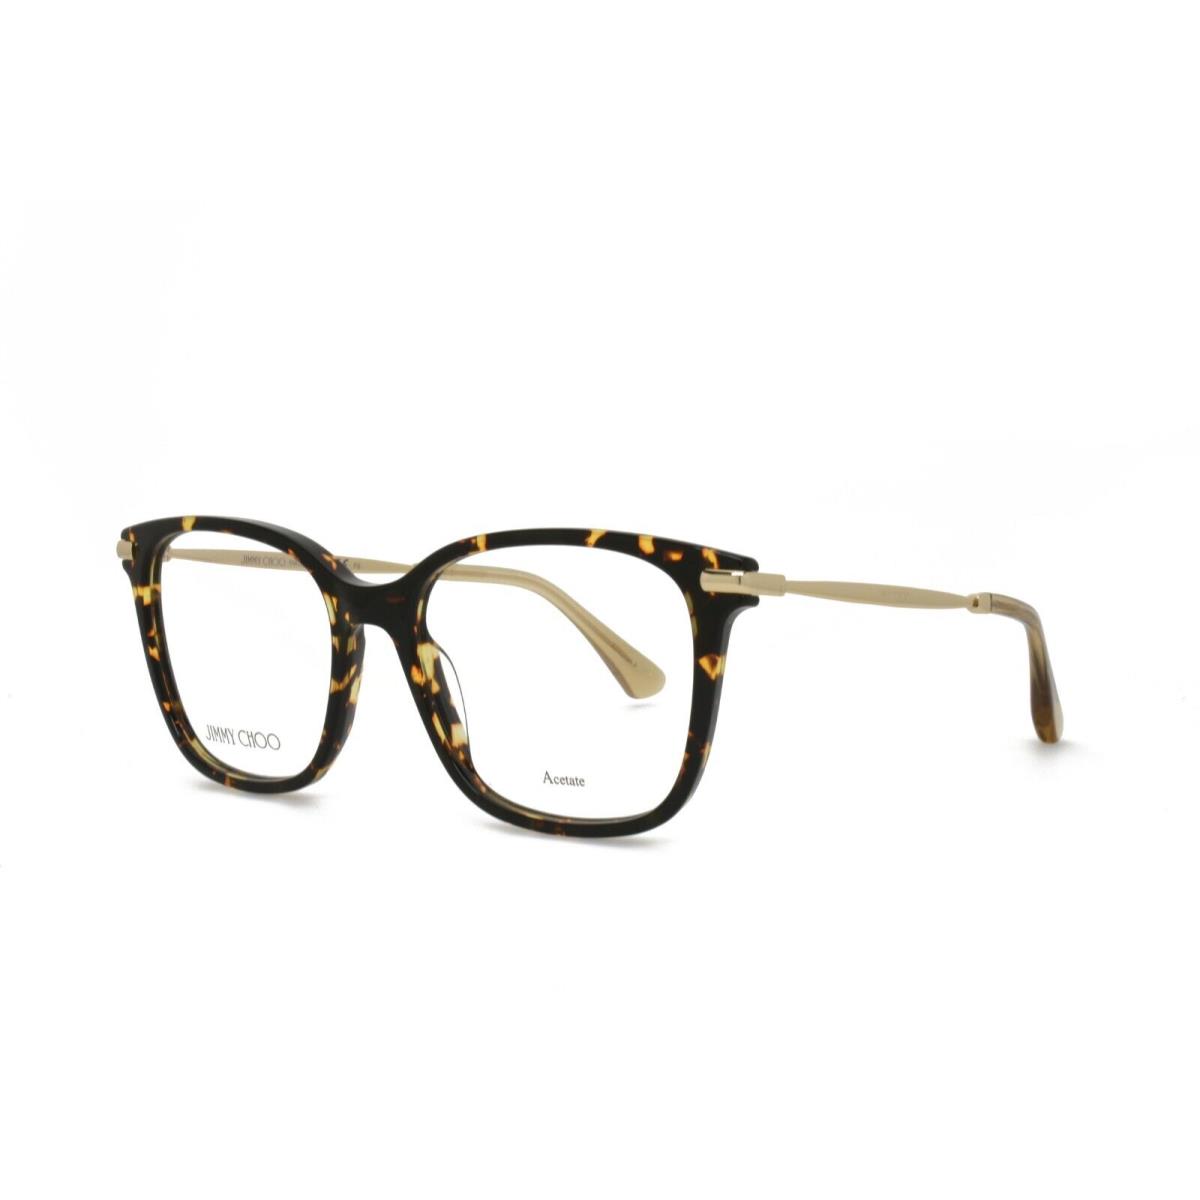 Jimmy Choo 195 086 52-17-140 Brown Tortoise Gold Eyeglasses